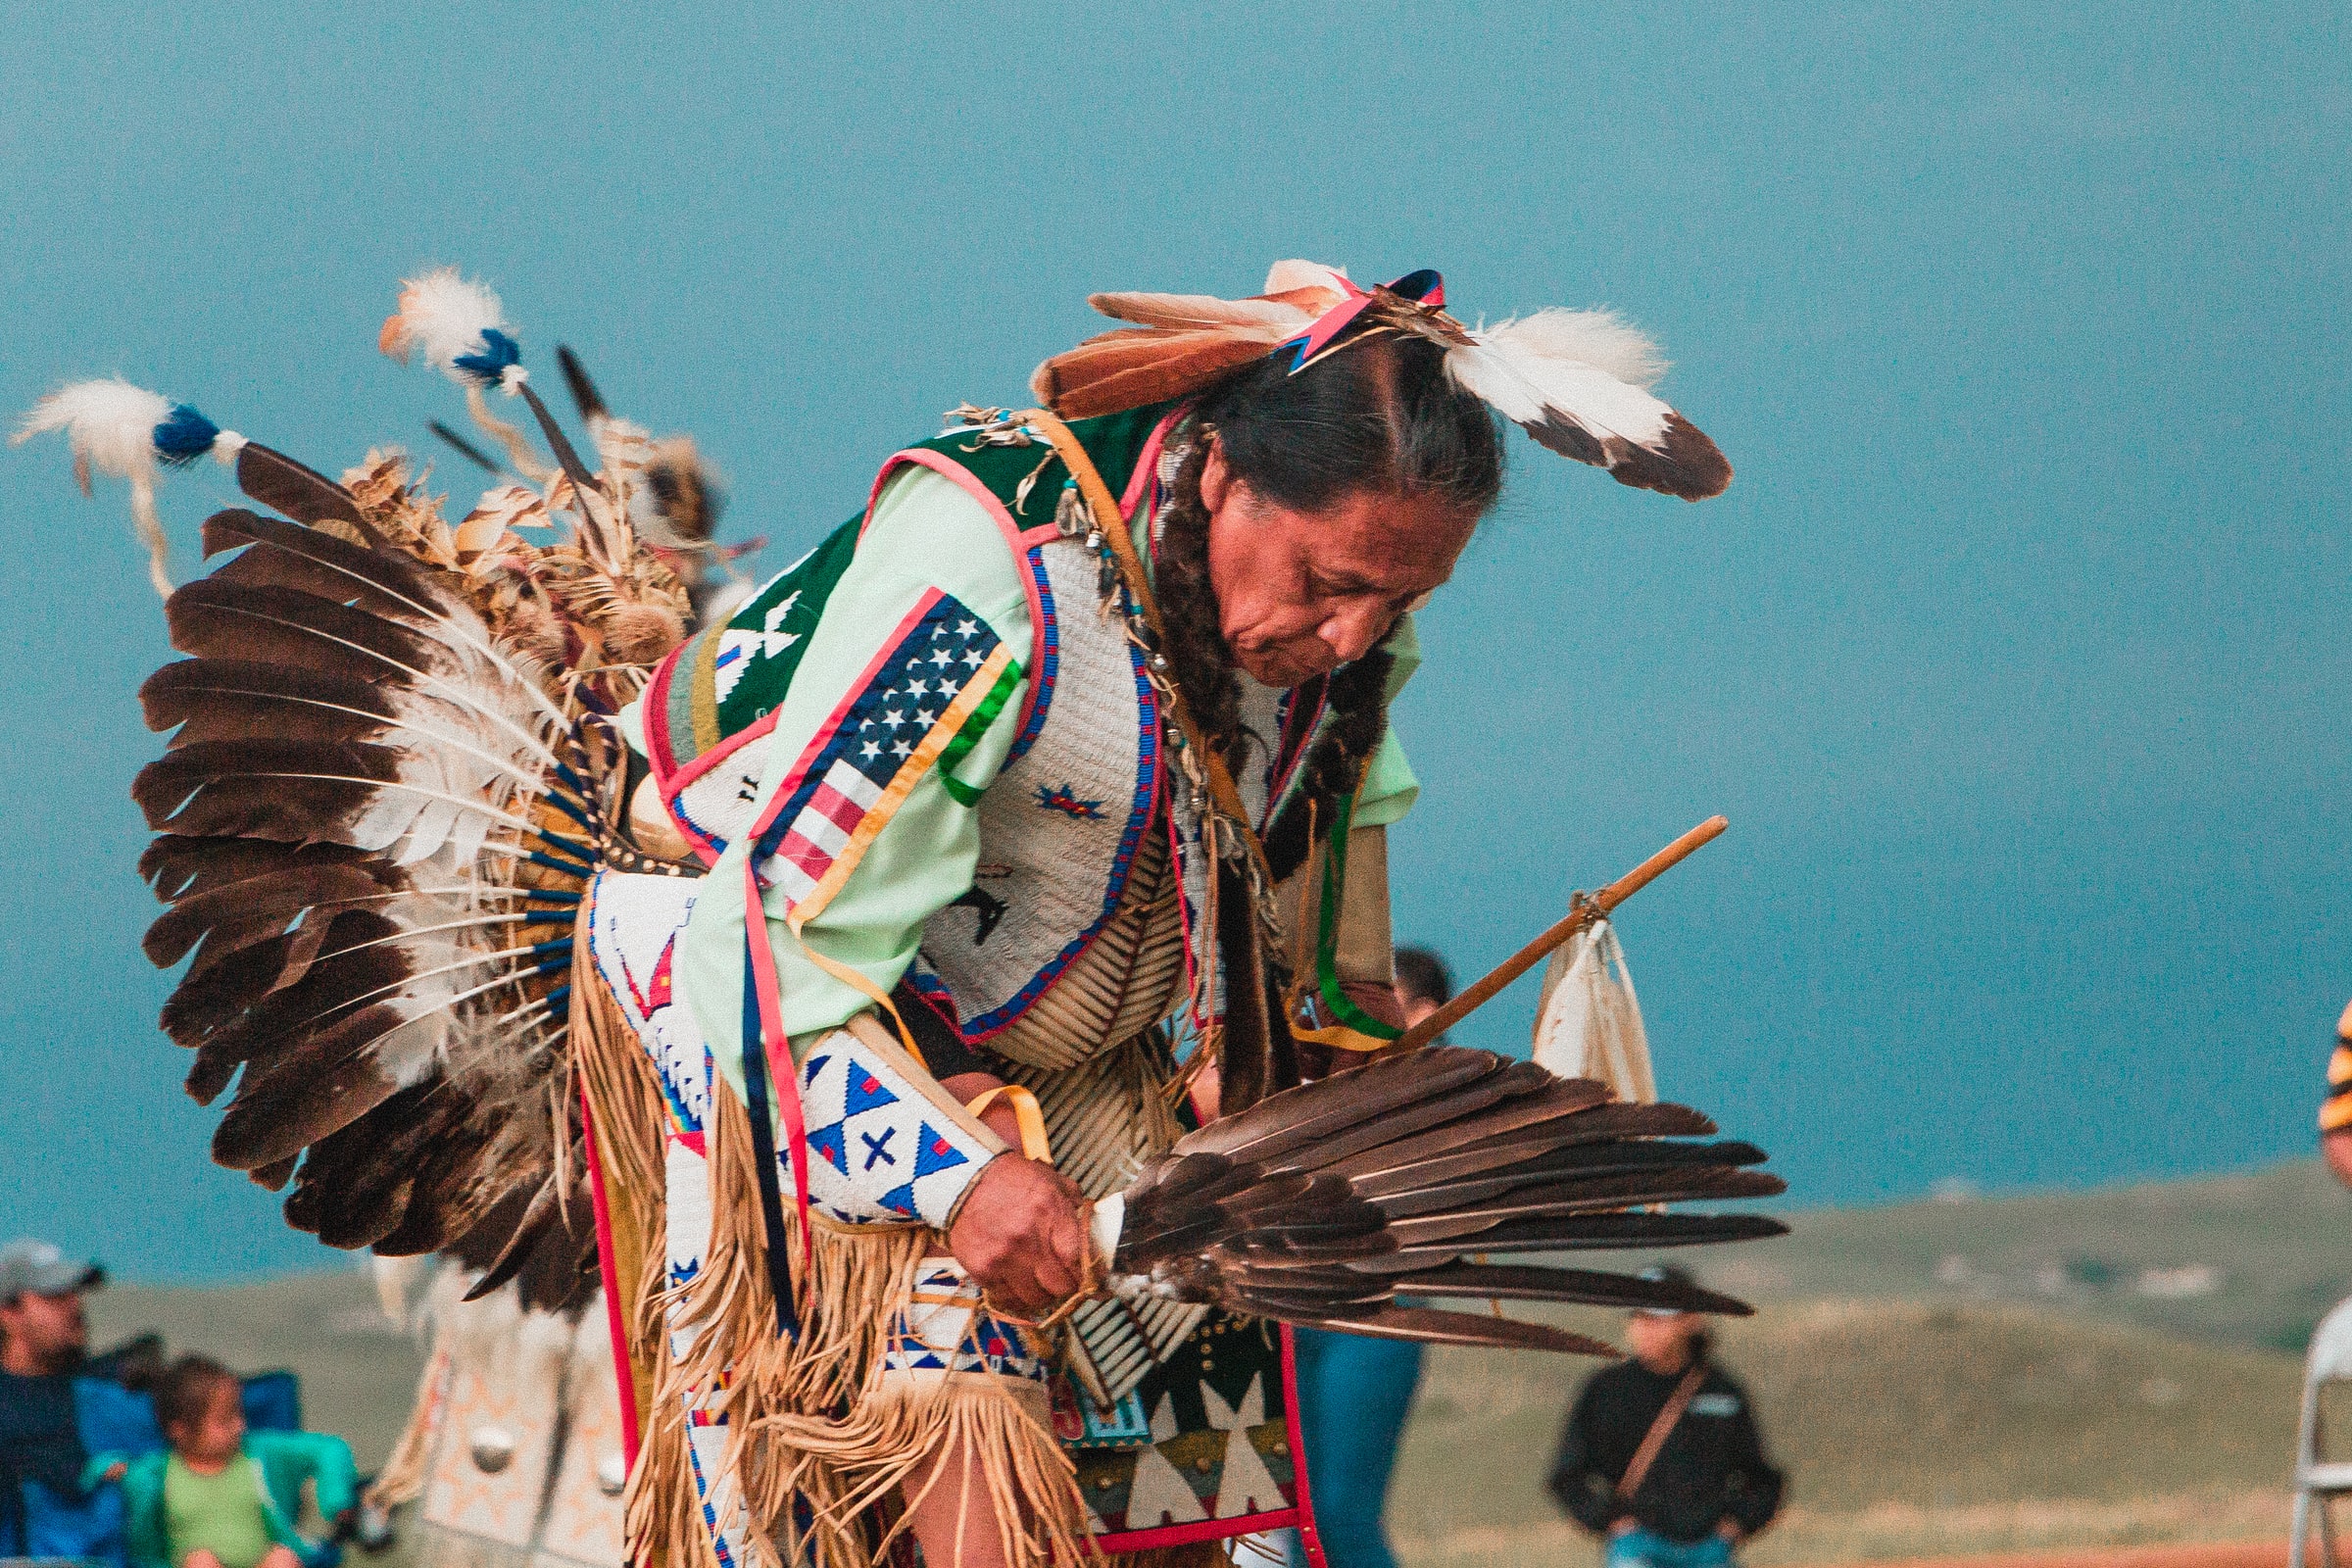 Native American Man Dances in Traditional Ceremony Attire